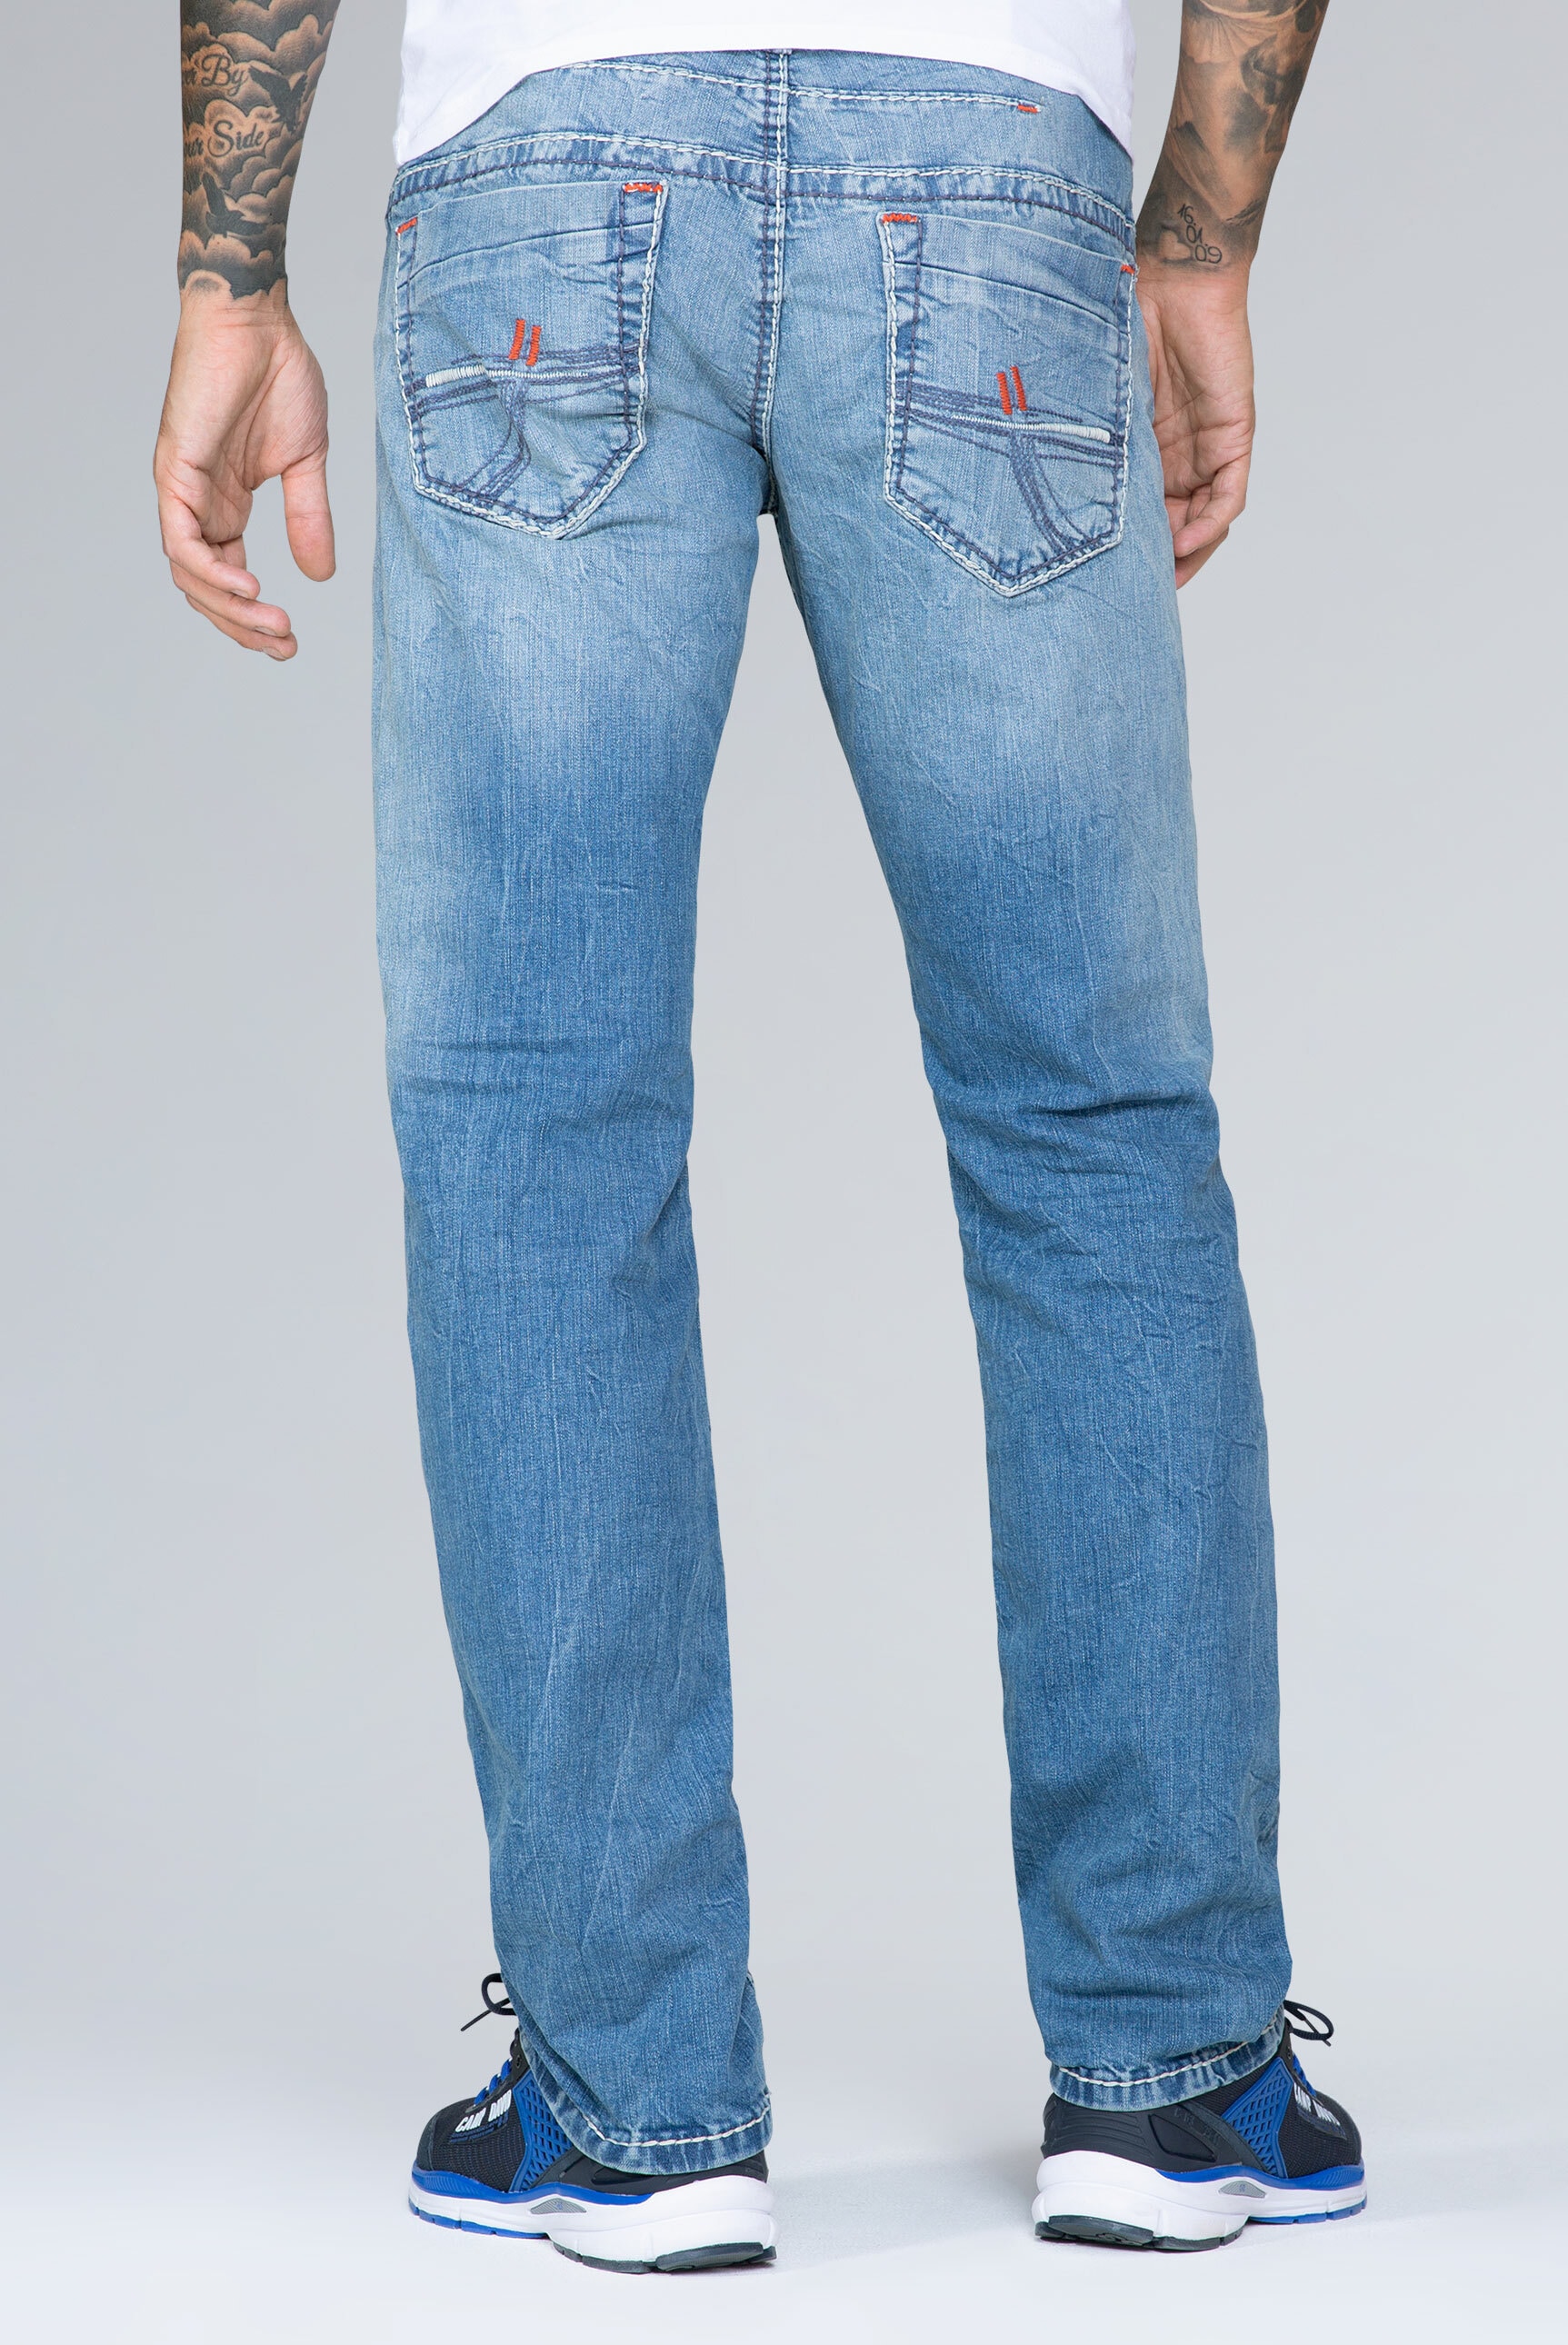 CAMP DAVID Comfort-fit-Jeans, mit Kontrast-Steppungen